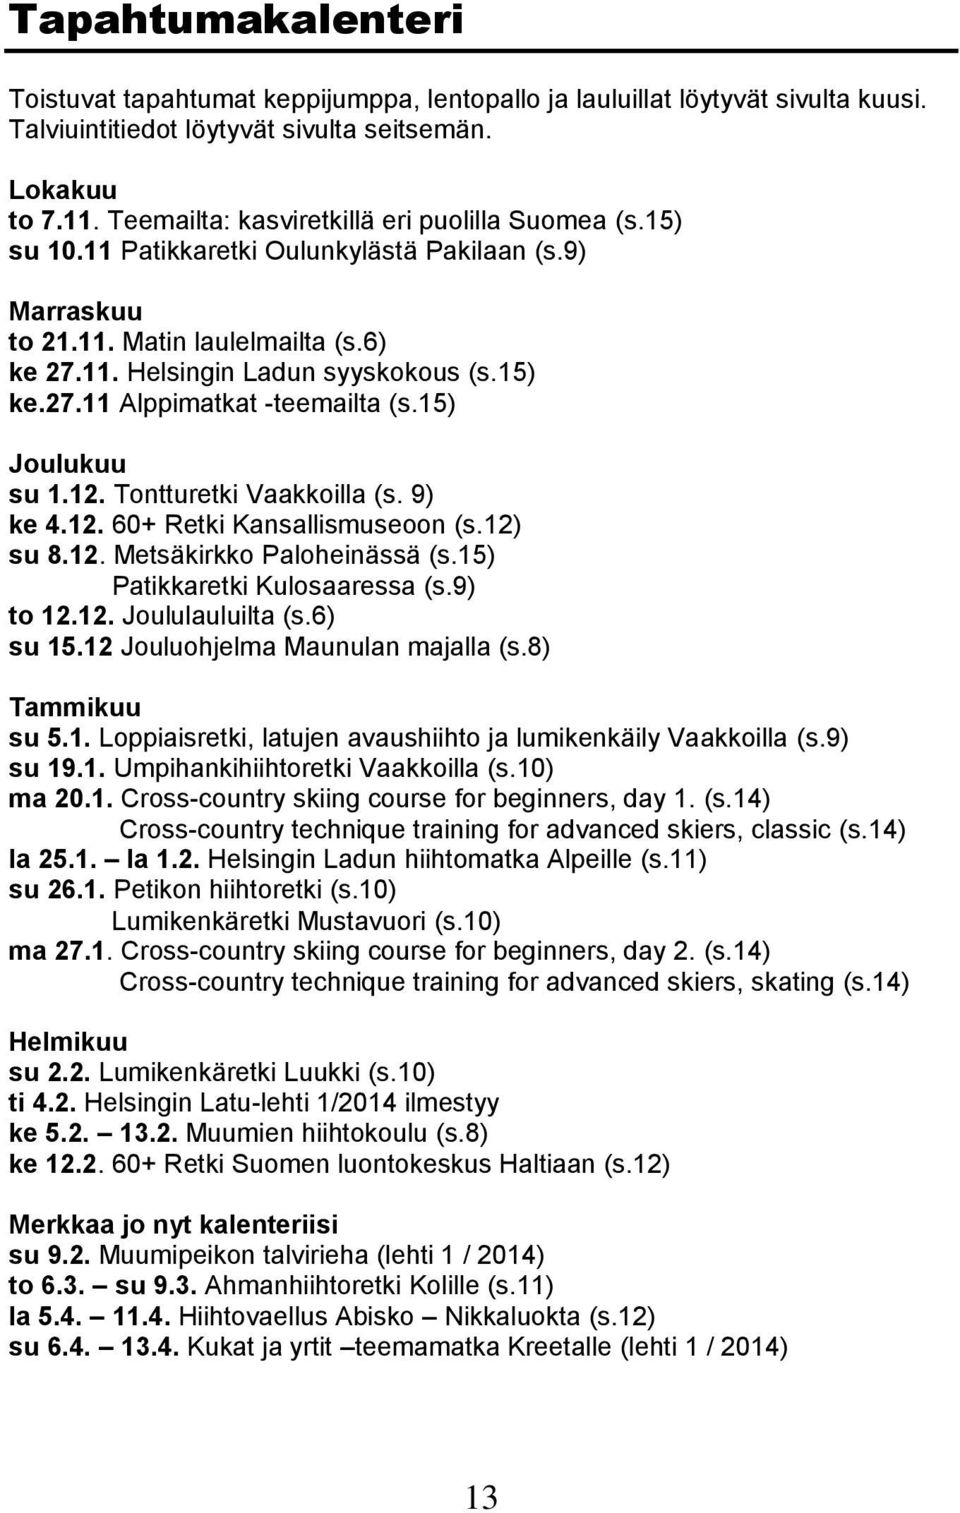 15) Joulukuu su 1.12. Tontturetki Vaakkoilla (s. 9) ke 4.12. 60+ Retki Kansallismuseoon (s.12) su 8.12. Metsäkirkko Paloheinässä (s.15) Patikkaretki Kulosaaressa (s.9) to 12.12. Joululauluilta (s.